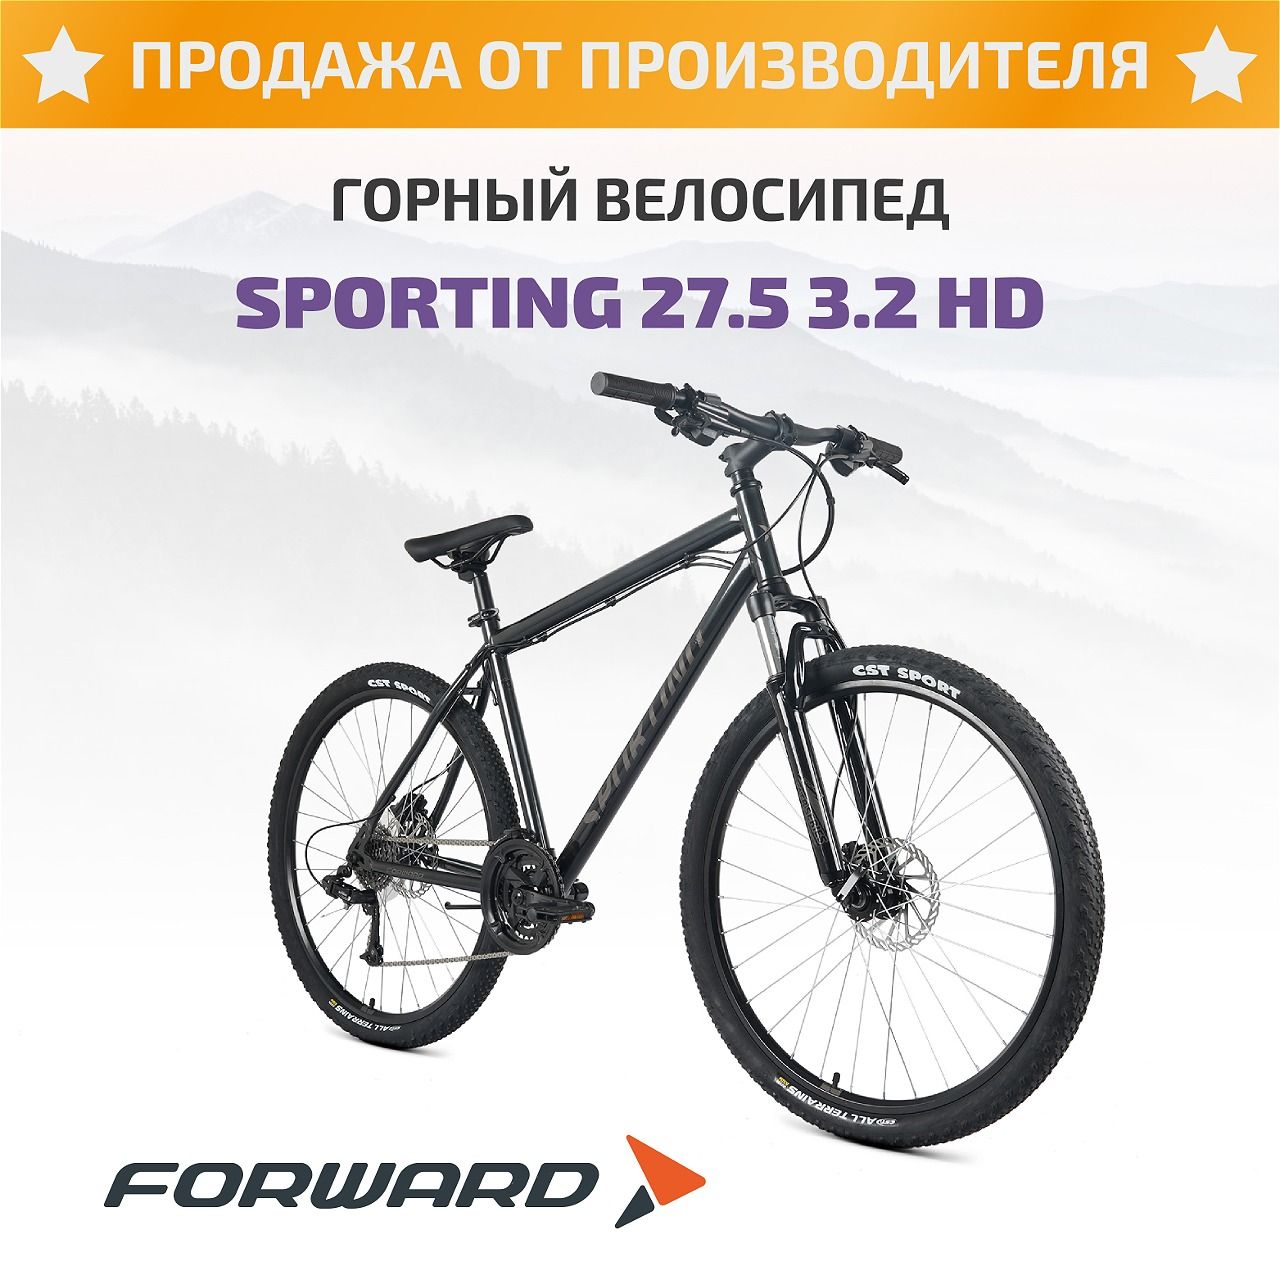 ForwardВелосипедГорный,SPORTING27,53.2HD